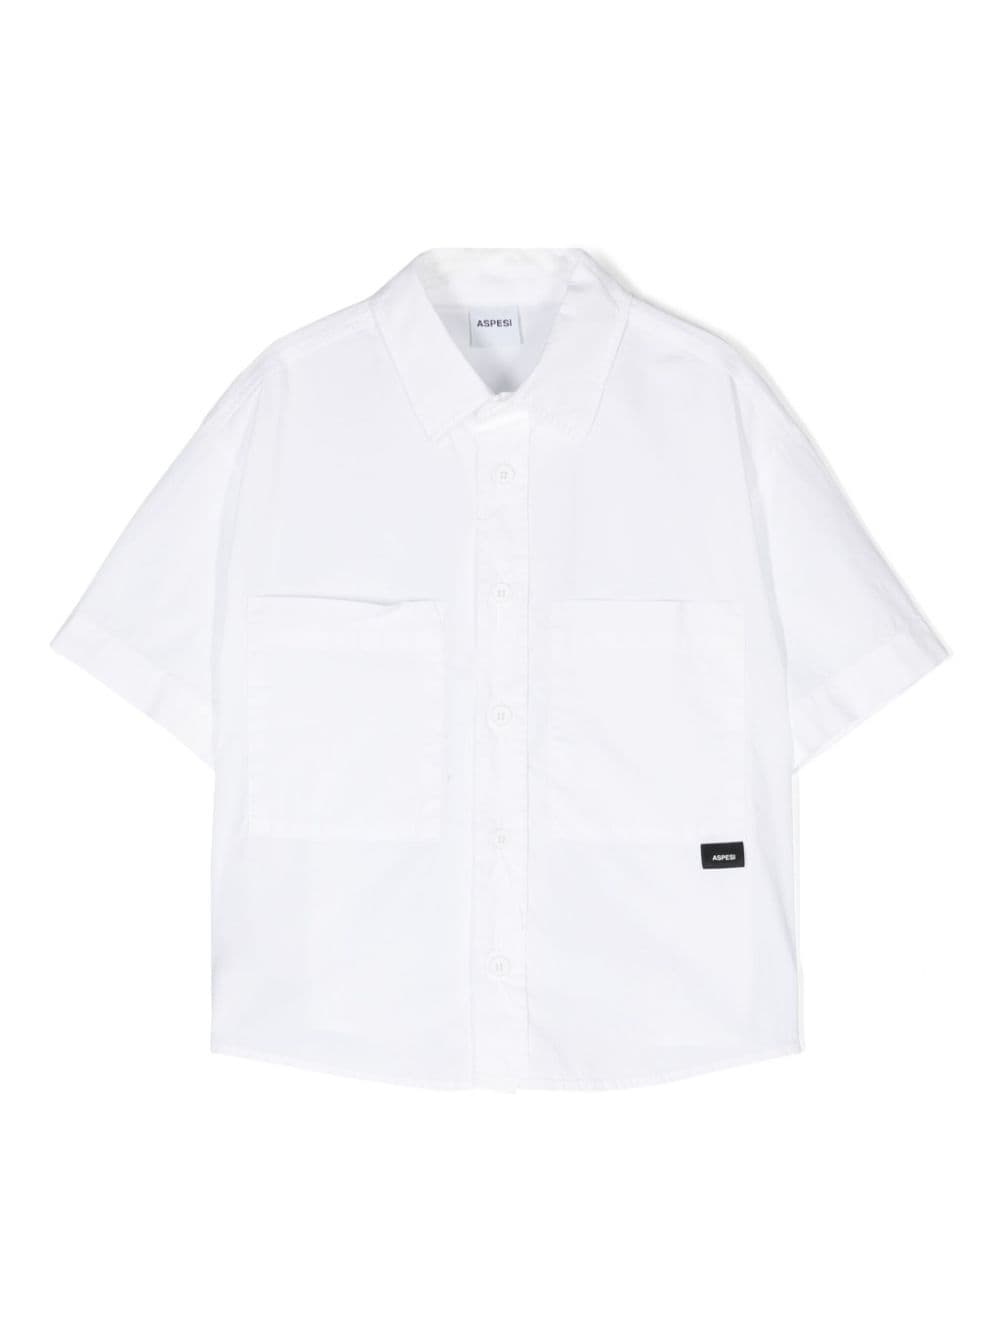 Aspesi Kids logo-tag poplin shirt - White